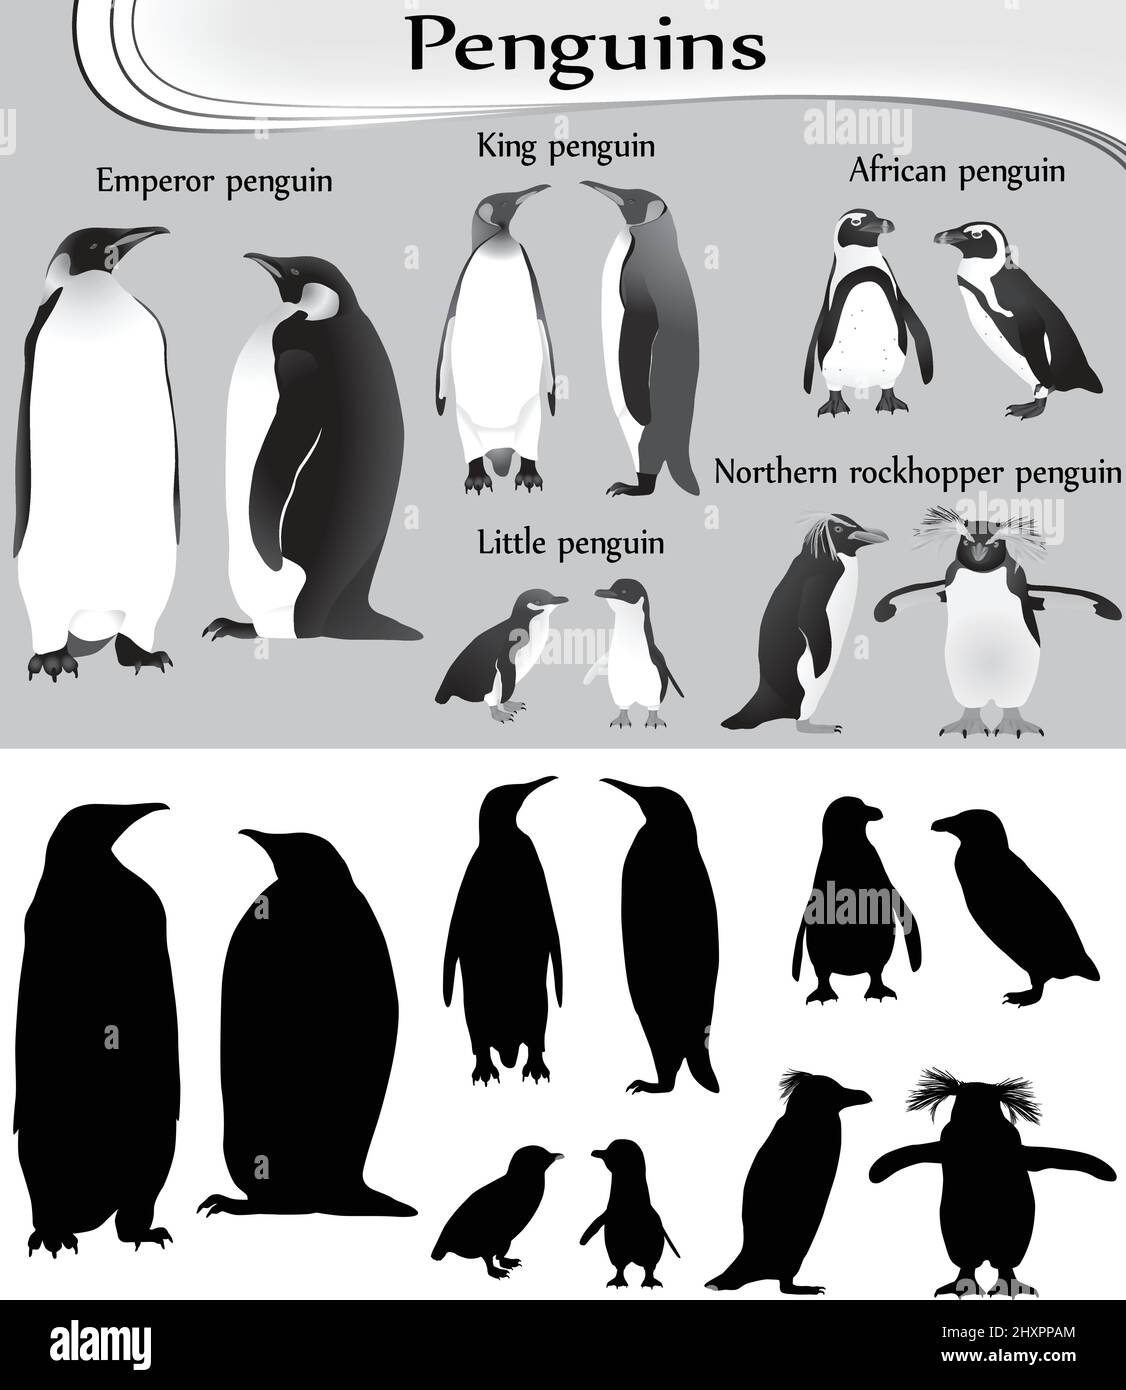 Collection de différentes espèces de pingouins en noir et blanc image et silhouette: empereur, roi, petit, africain, nord de la rockhopper Illustration de Vecteur